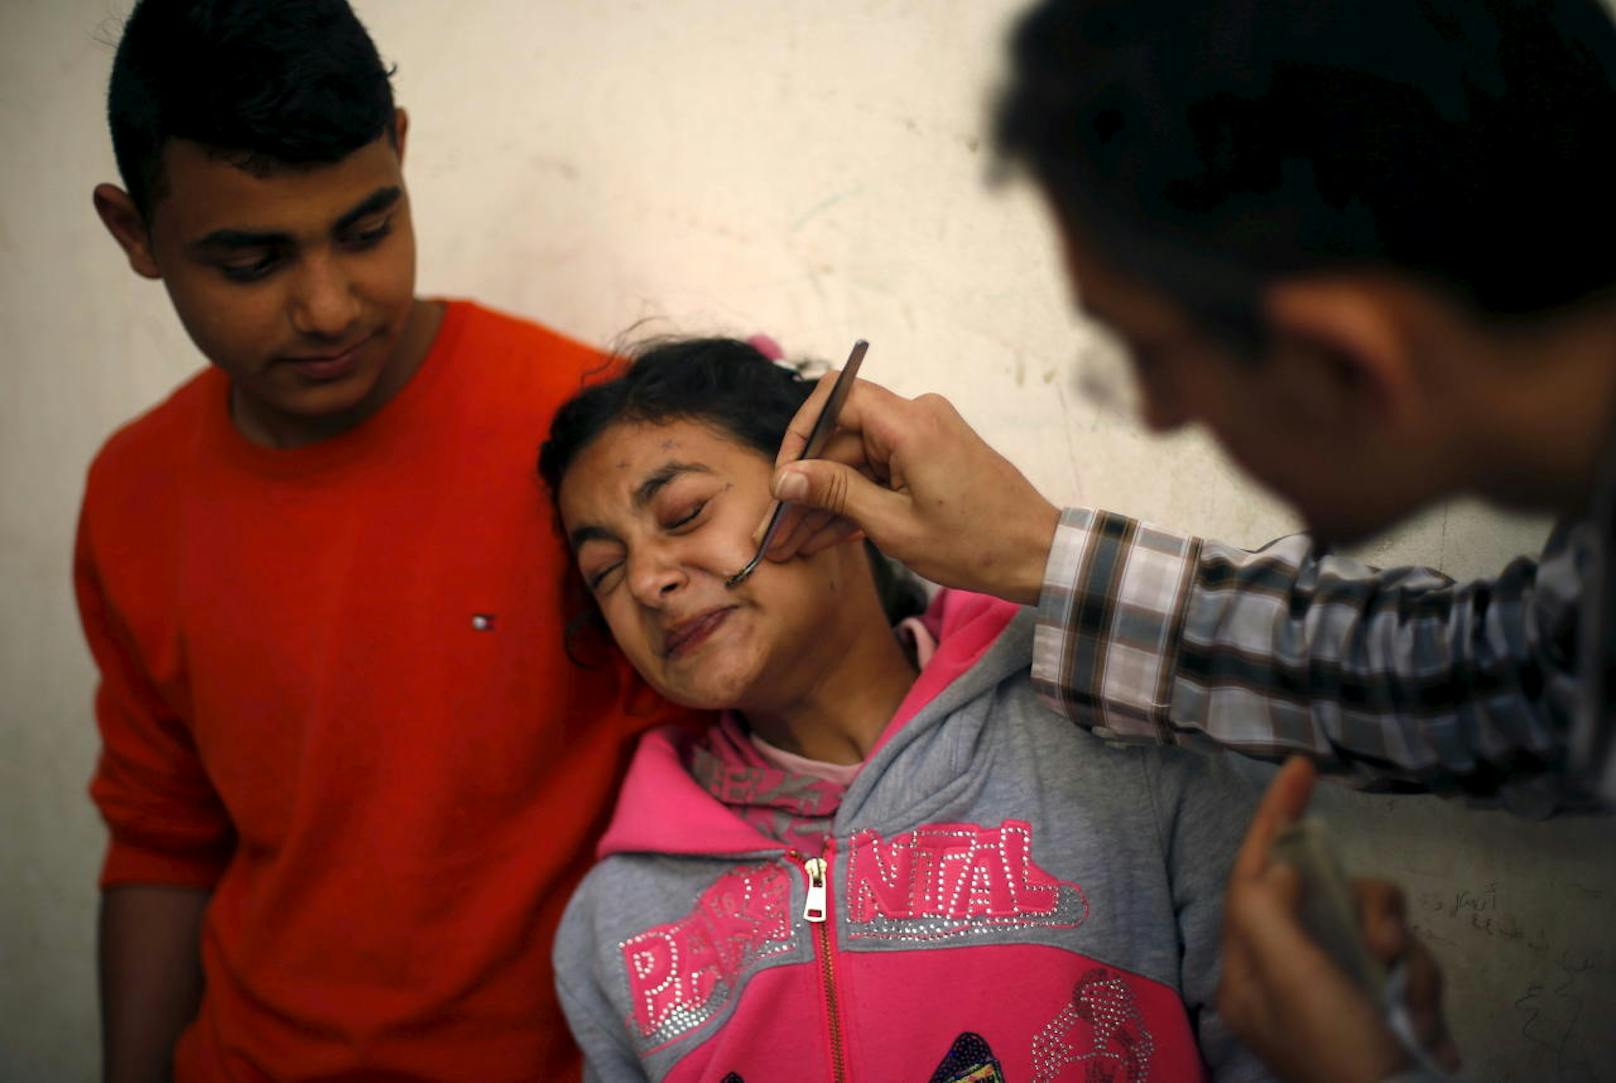 Im Bild: Eine junge Palästinenserin, die an Gesichtslähmung leidet, wird dagegen mit einer Biene gestochen.